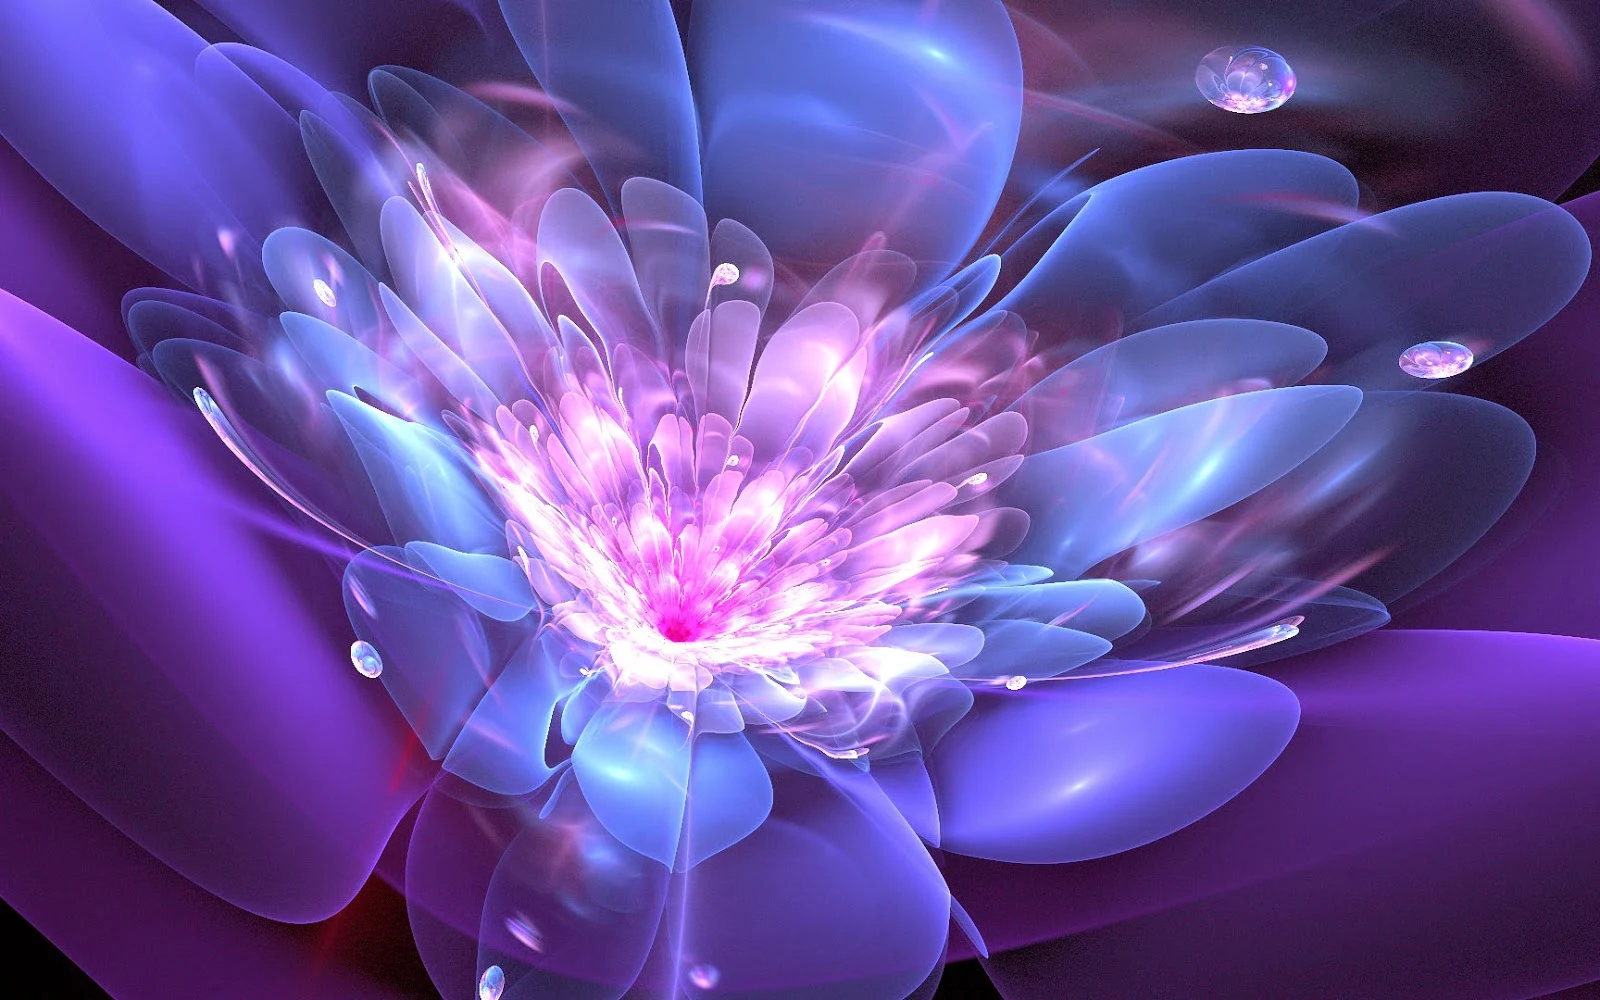 Abstracte blauw paarse lichtgevende bloem in 3D